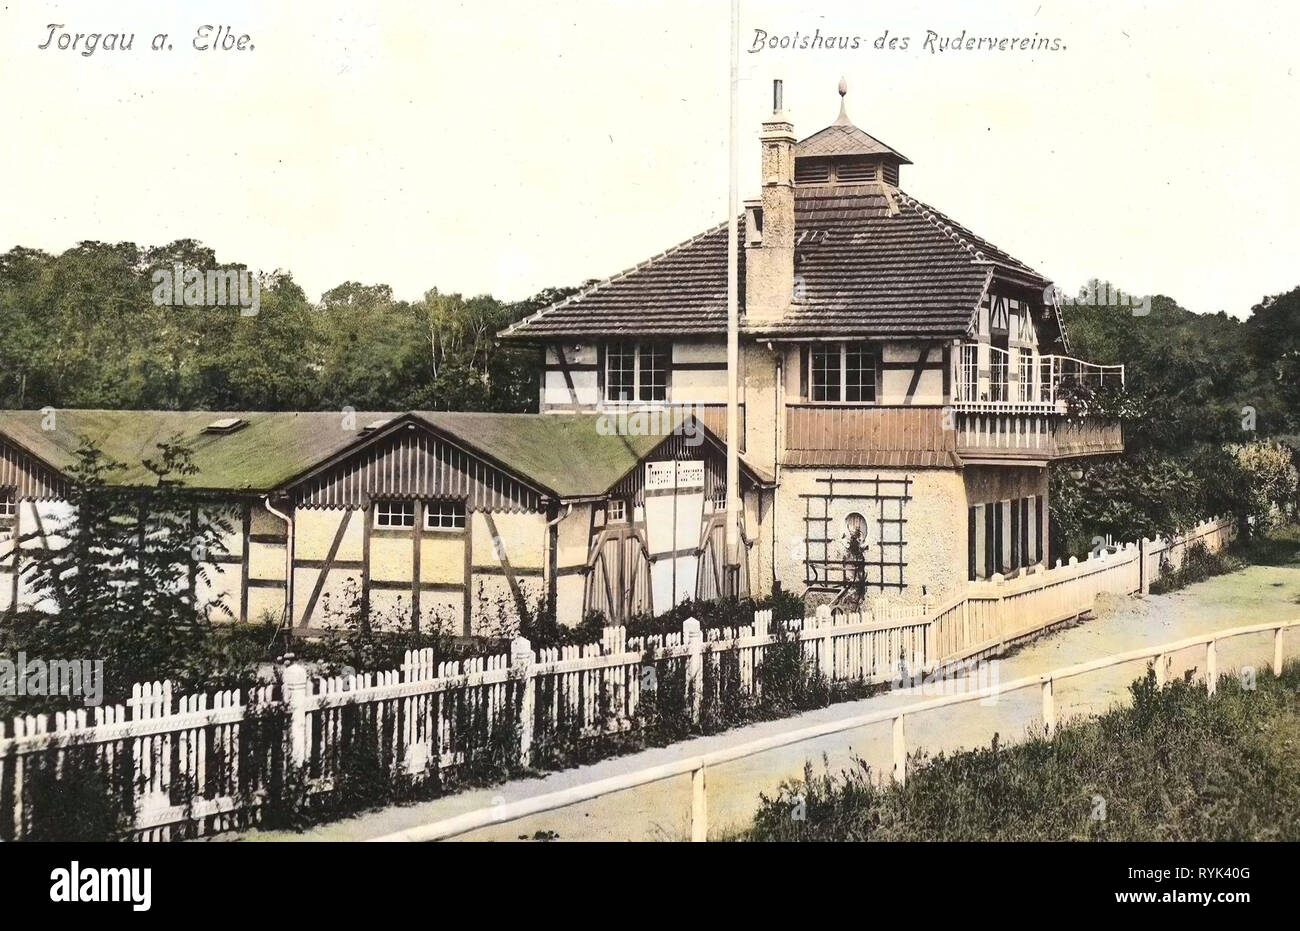 Rudern Vereine in Deutschland, Gebäude in Torgau, 1914, Landkreis Nordsachsen, Torgau, Bootshaus des Rudervereins Stockfoto